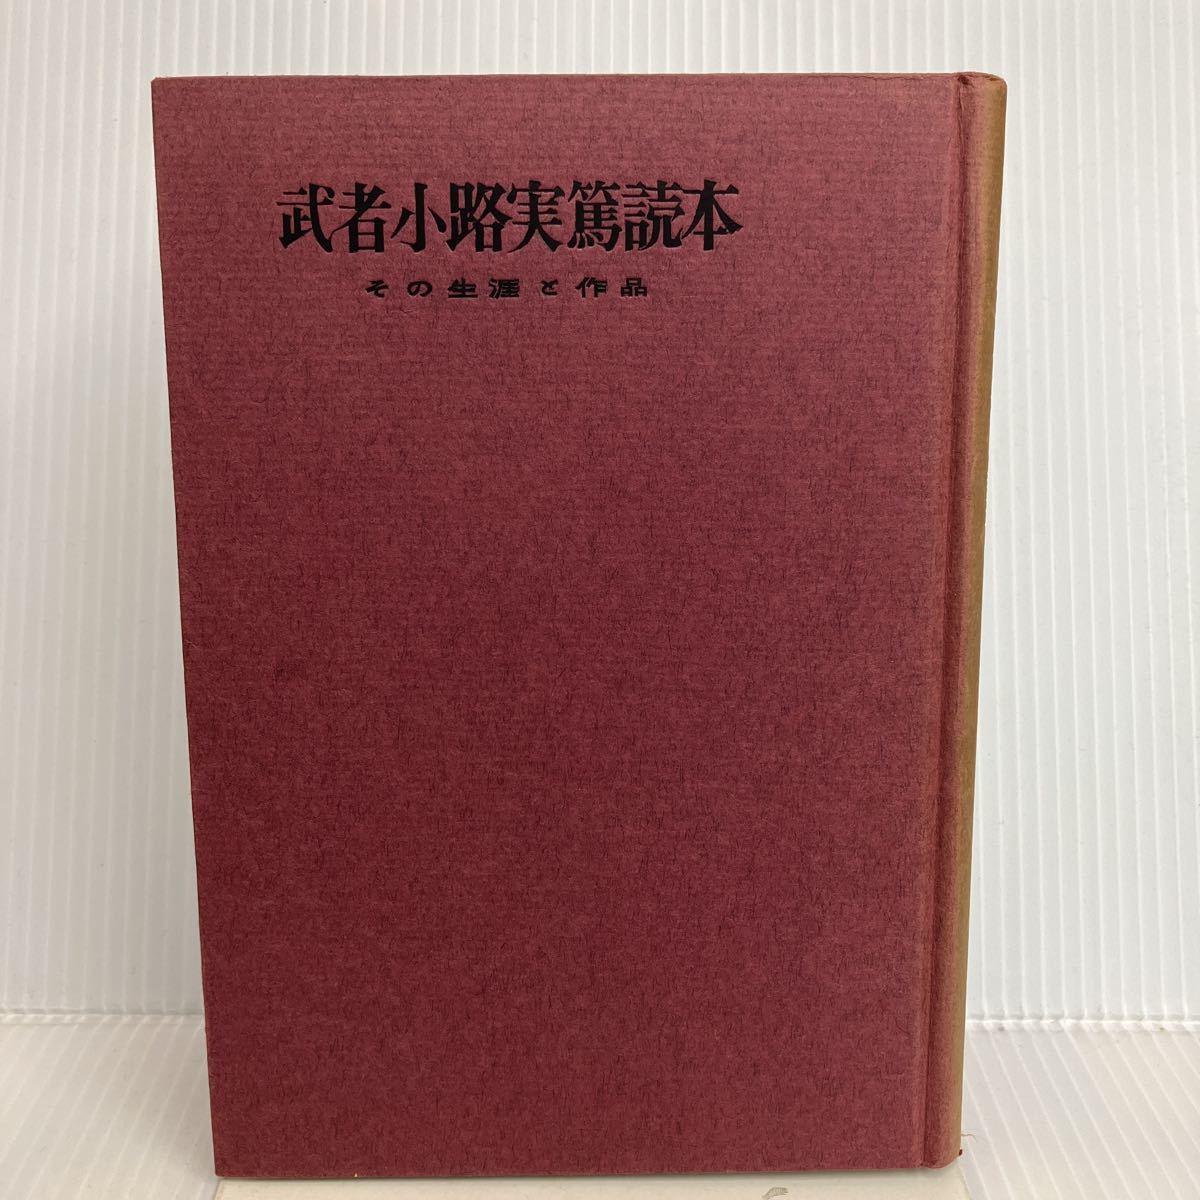 I-И/ Mushakoji Saneatsu читатель эта сырой .. произведение Showa три 10 4 год Honda осень ./ сборник национальное достояние фирма 